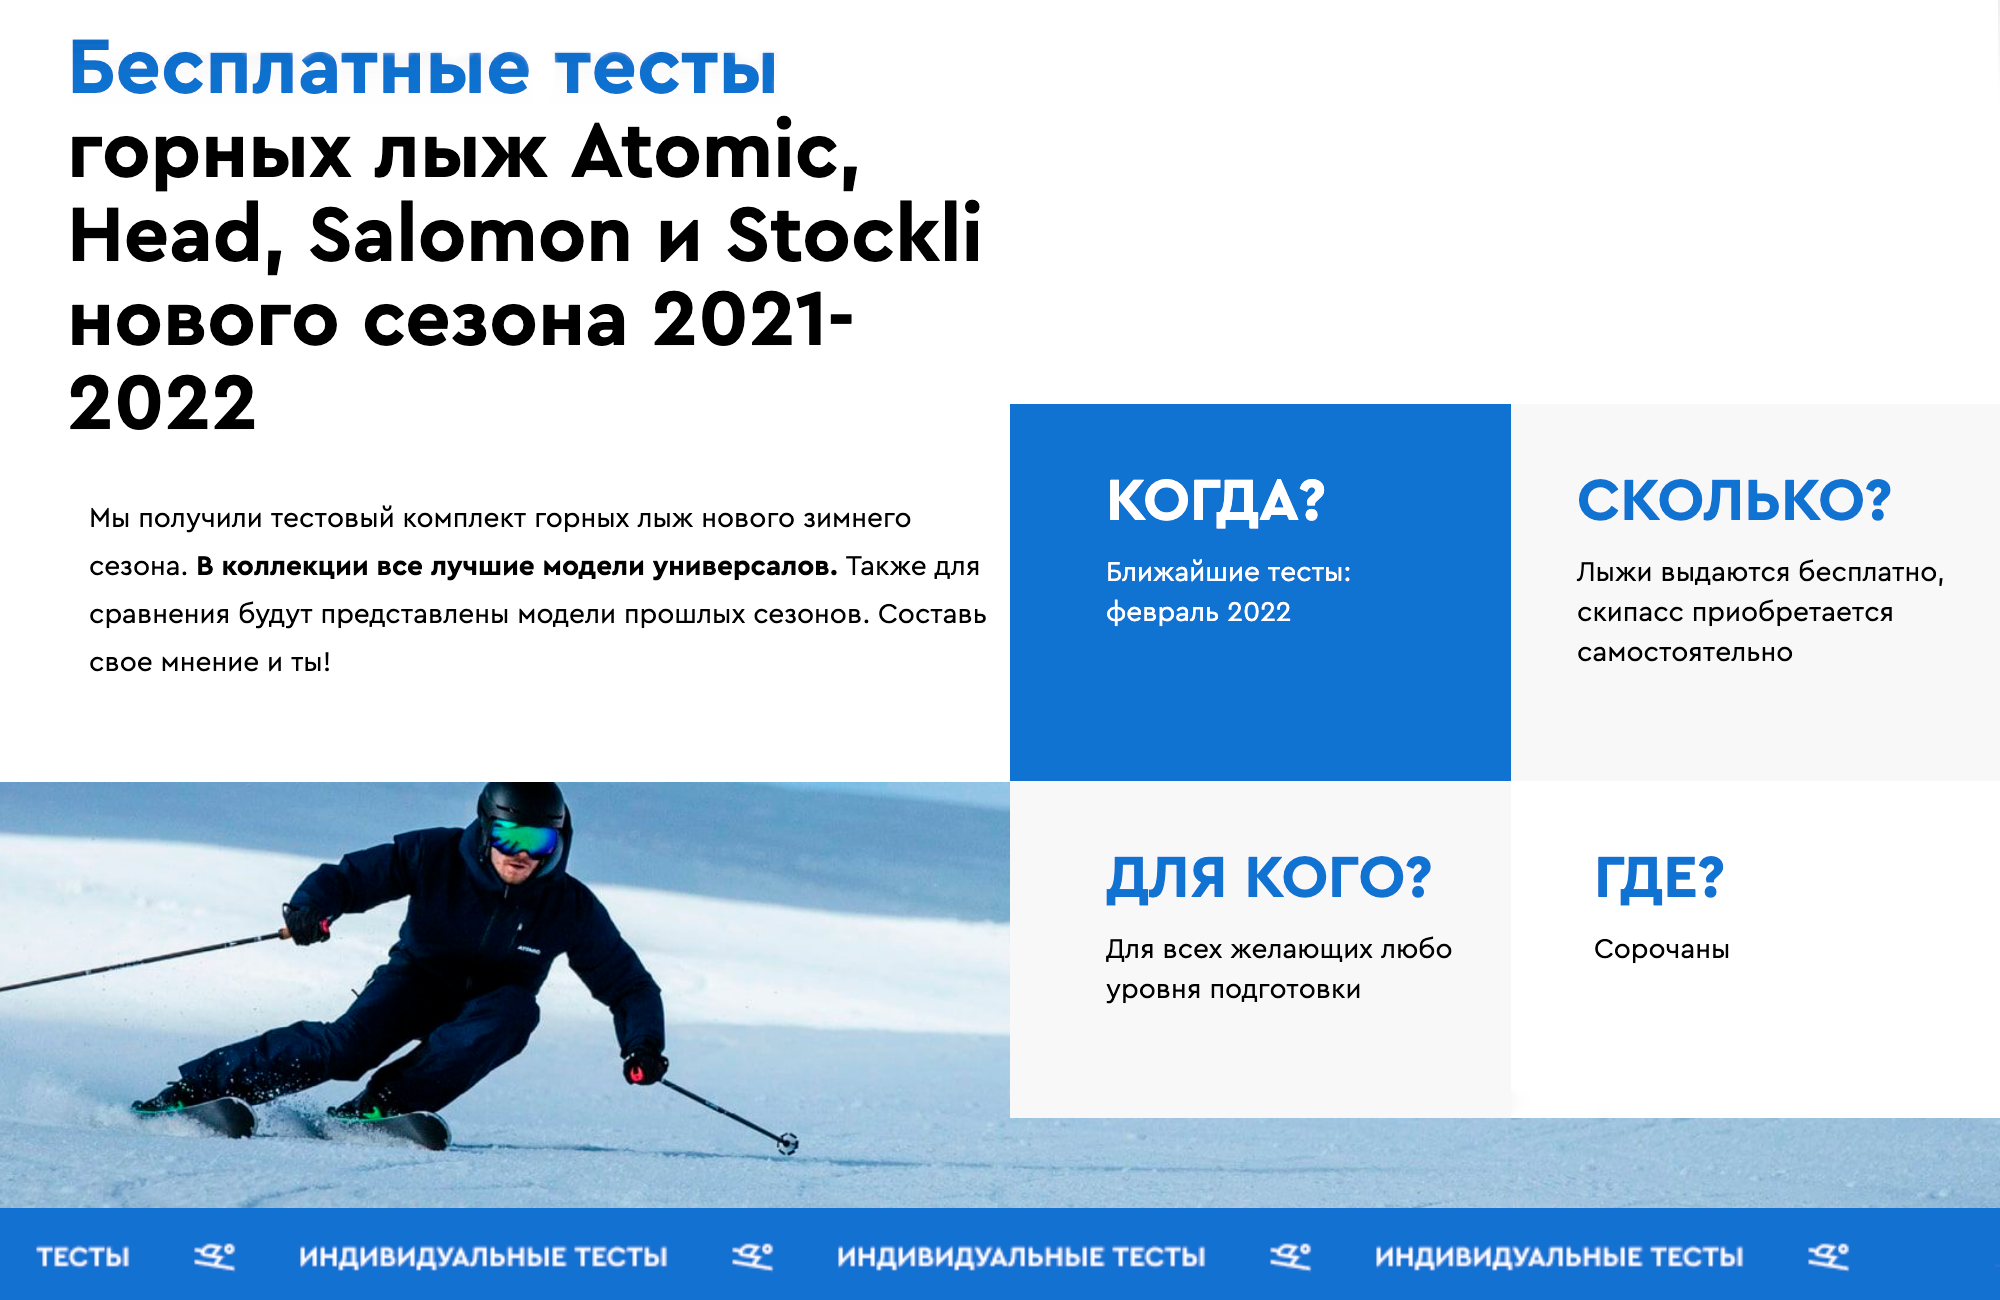 Бесплатные тесты горных лыж проводят и в Подмосковье. Источник: predelanet.ru